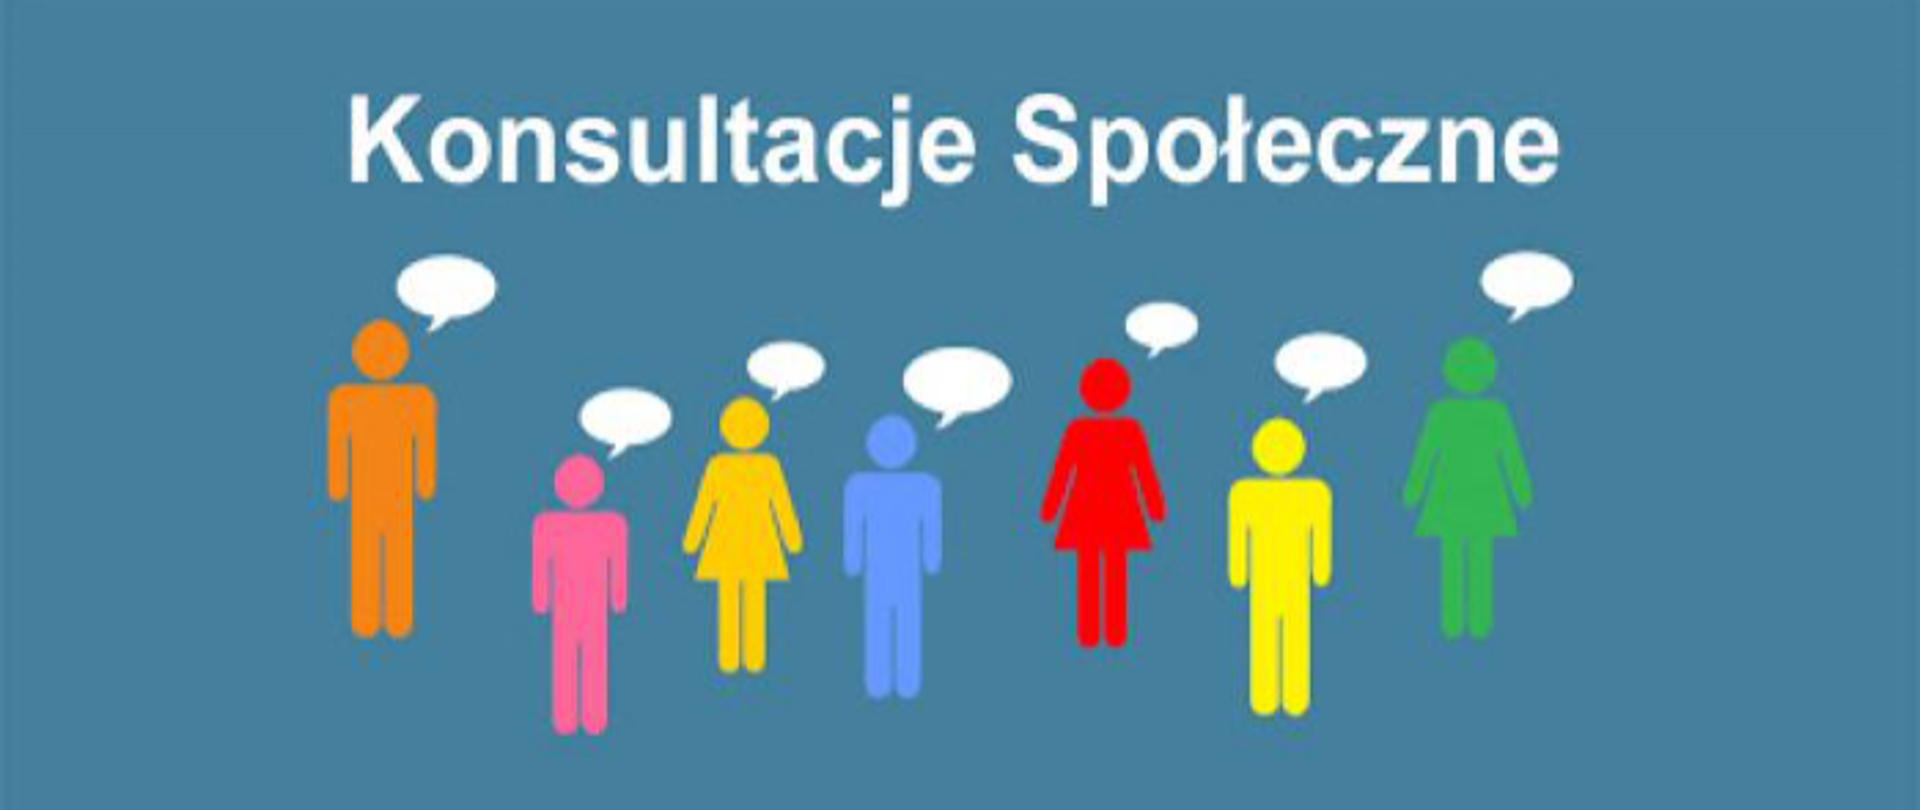 zdjęcie przedstawia siedem kolorowych ludzików z chmurkami nad głowami, wszystko jest na niebieskim tle , na górze napis na biało konsultacje społeczne 